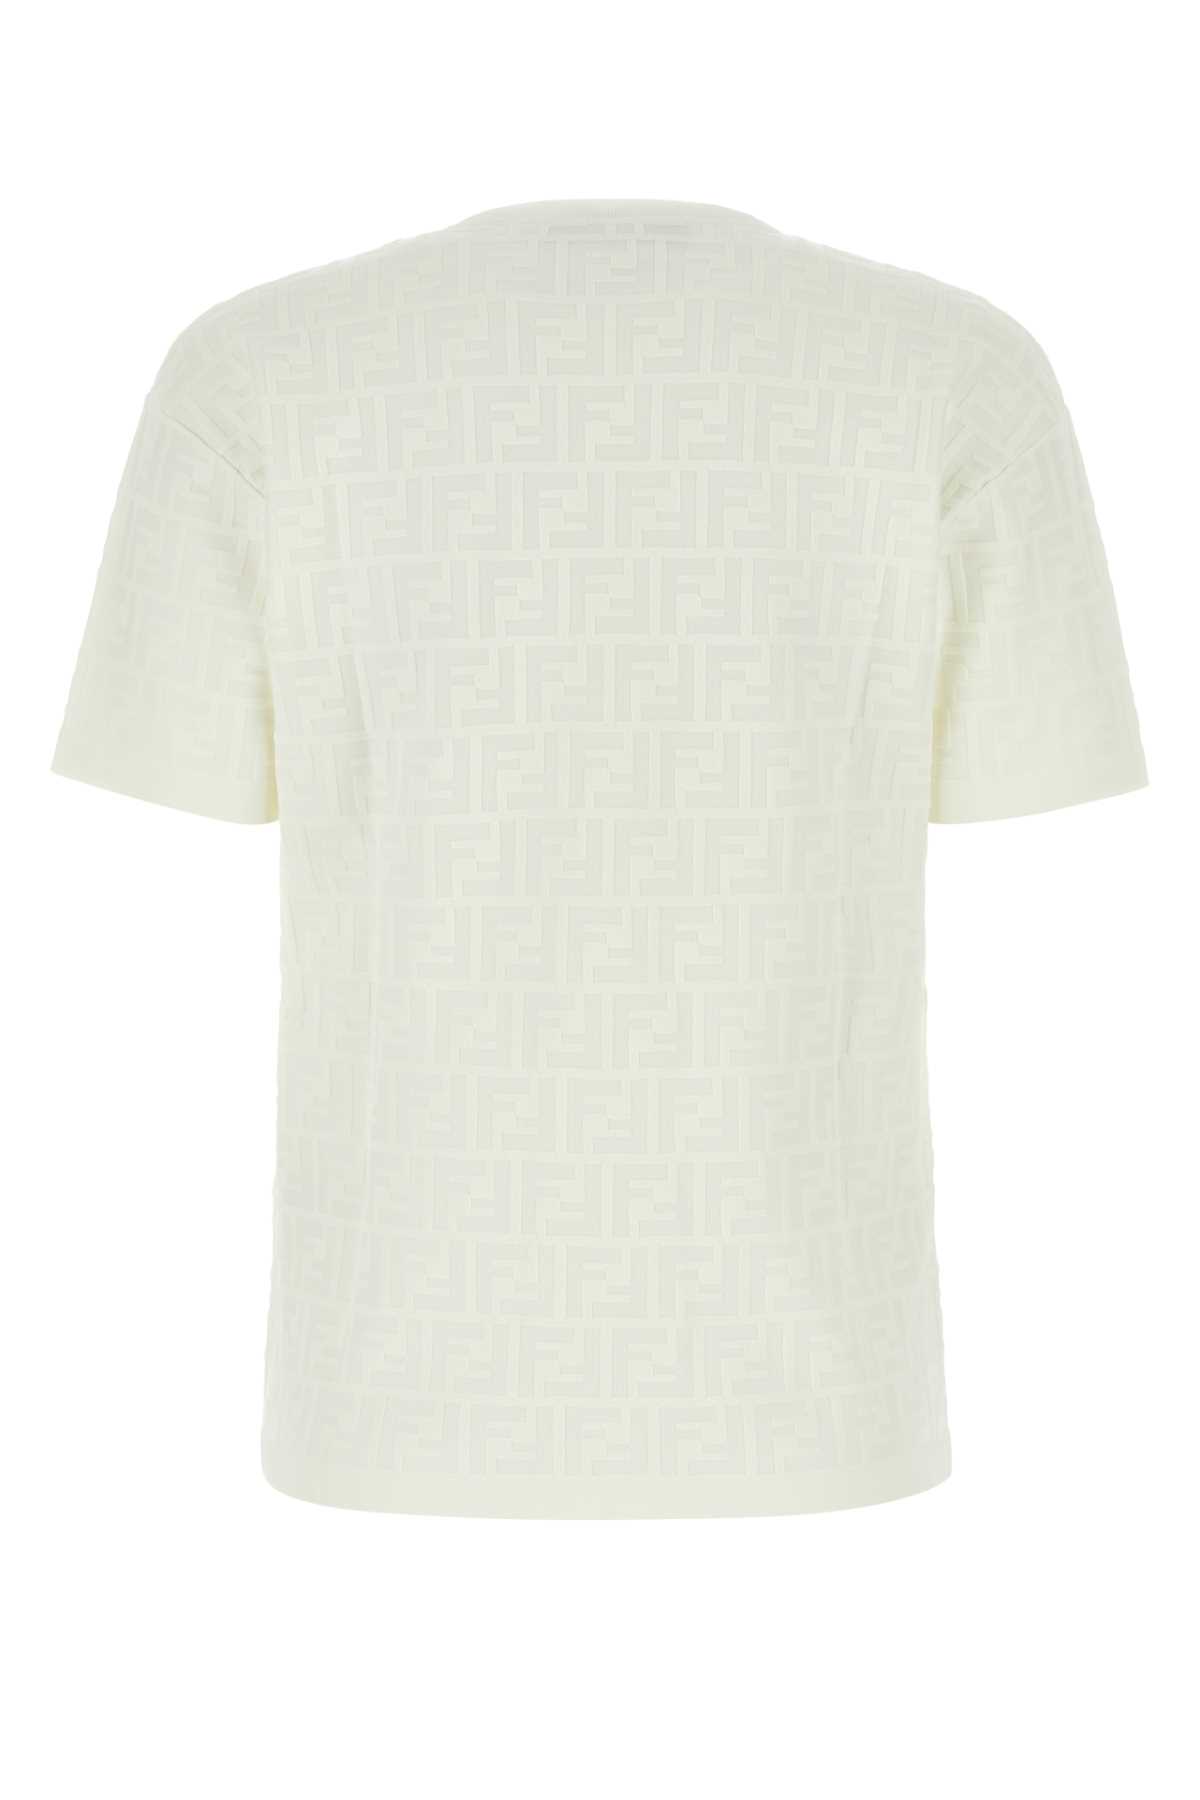 Fendi White Viscose Blend T-shirt